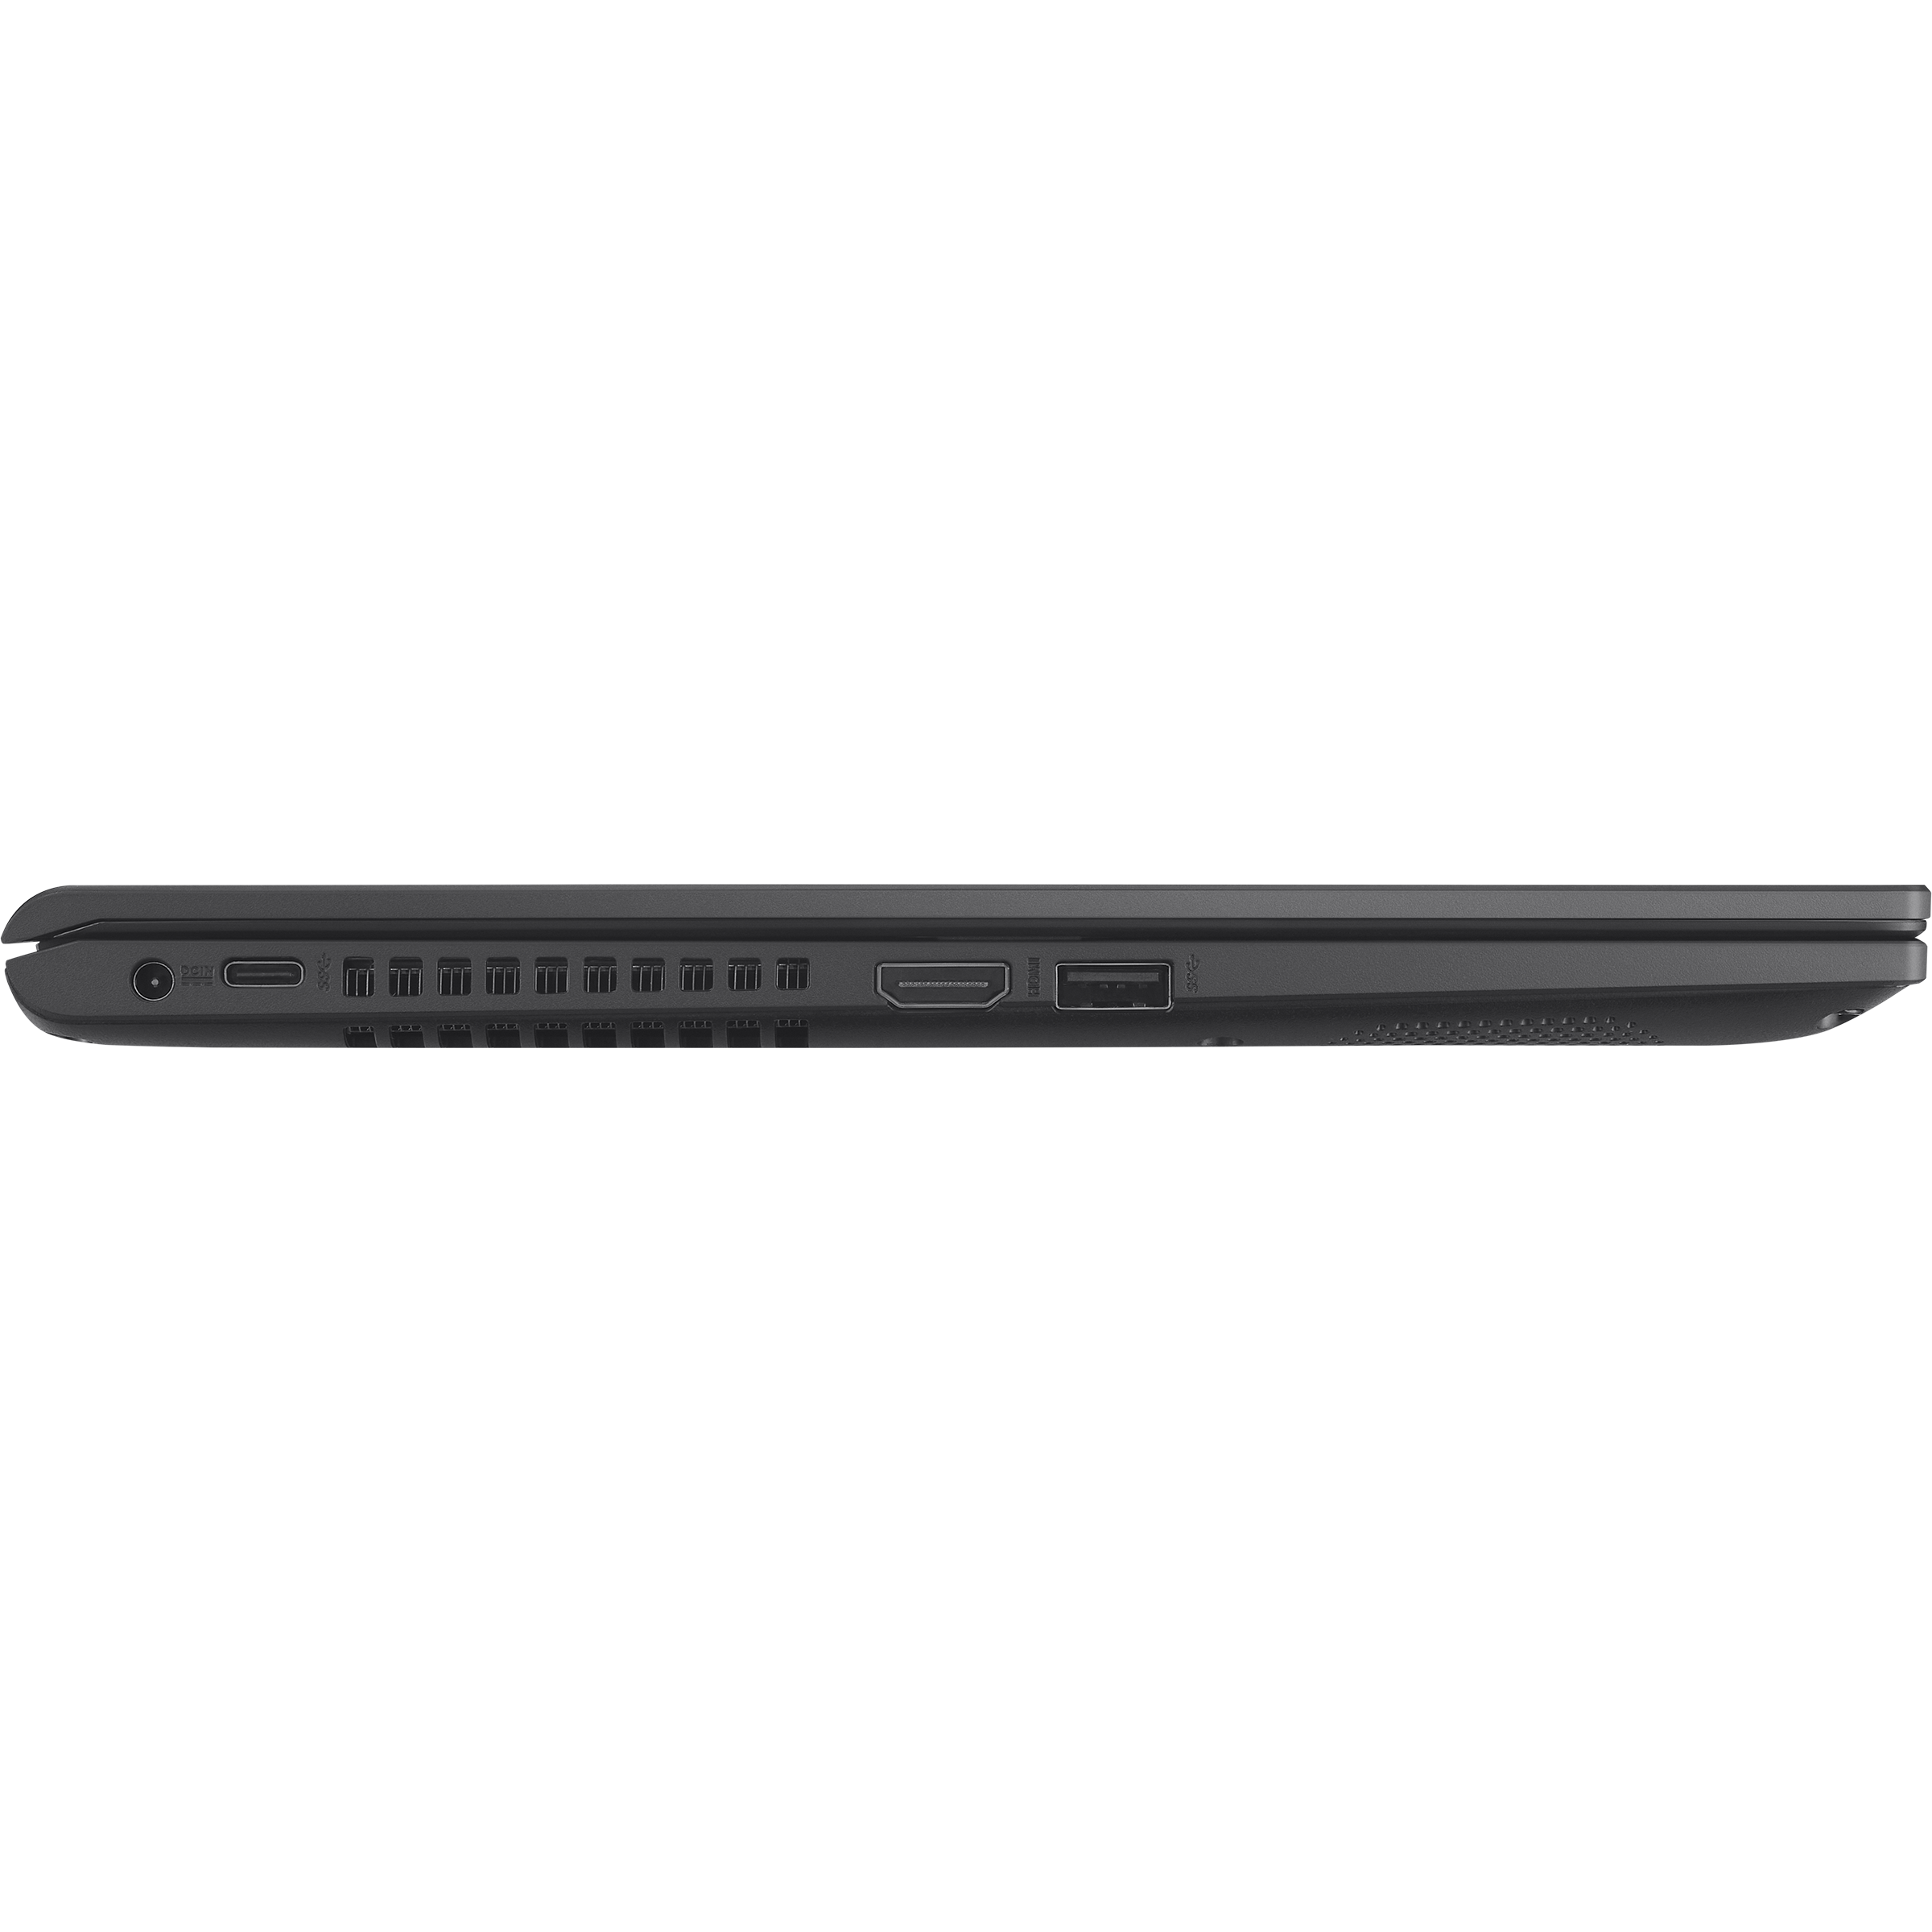  ASUS Vivobook X1400EA-I38128 - Computadora portátil con  pantalla táctil HD de 14 pulgadas, Intel Core i3-1115G4 de 11ª generación,  memoria de 8 GB, SSD de 128 GB, gráficos Intel UHD, Windows